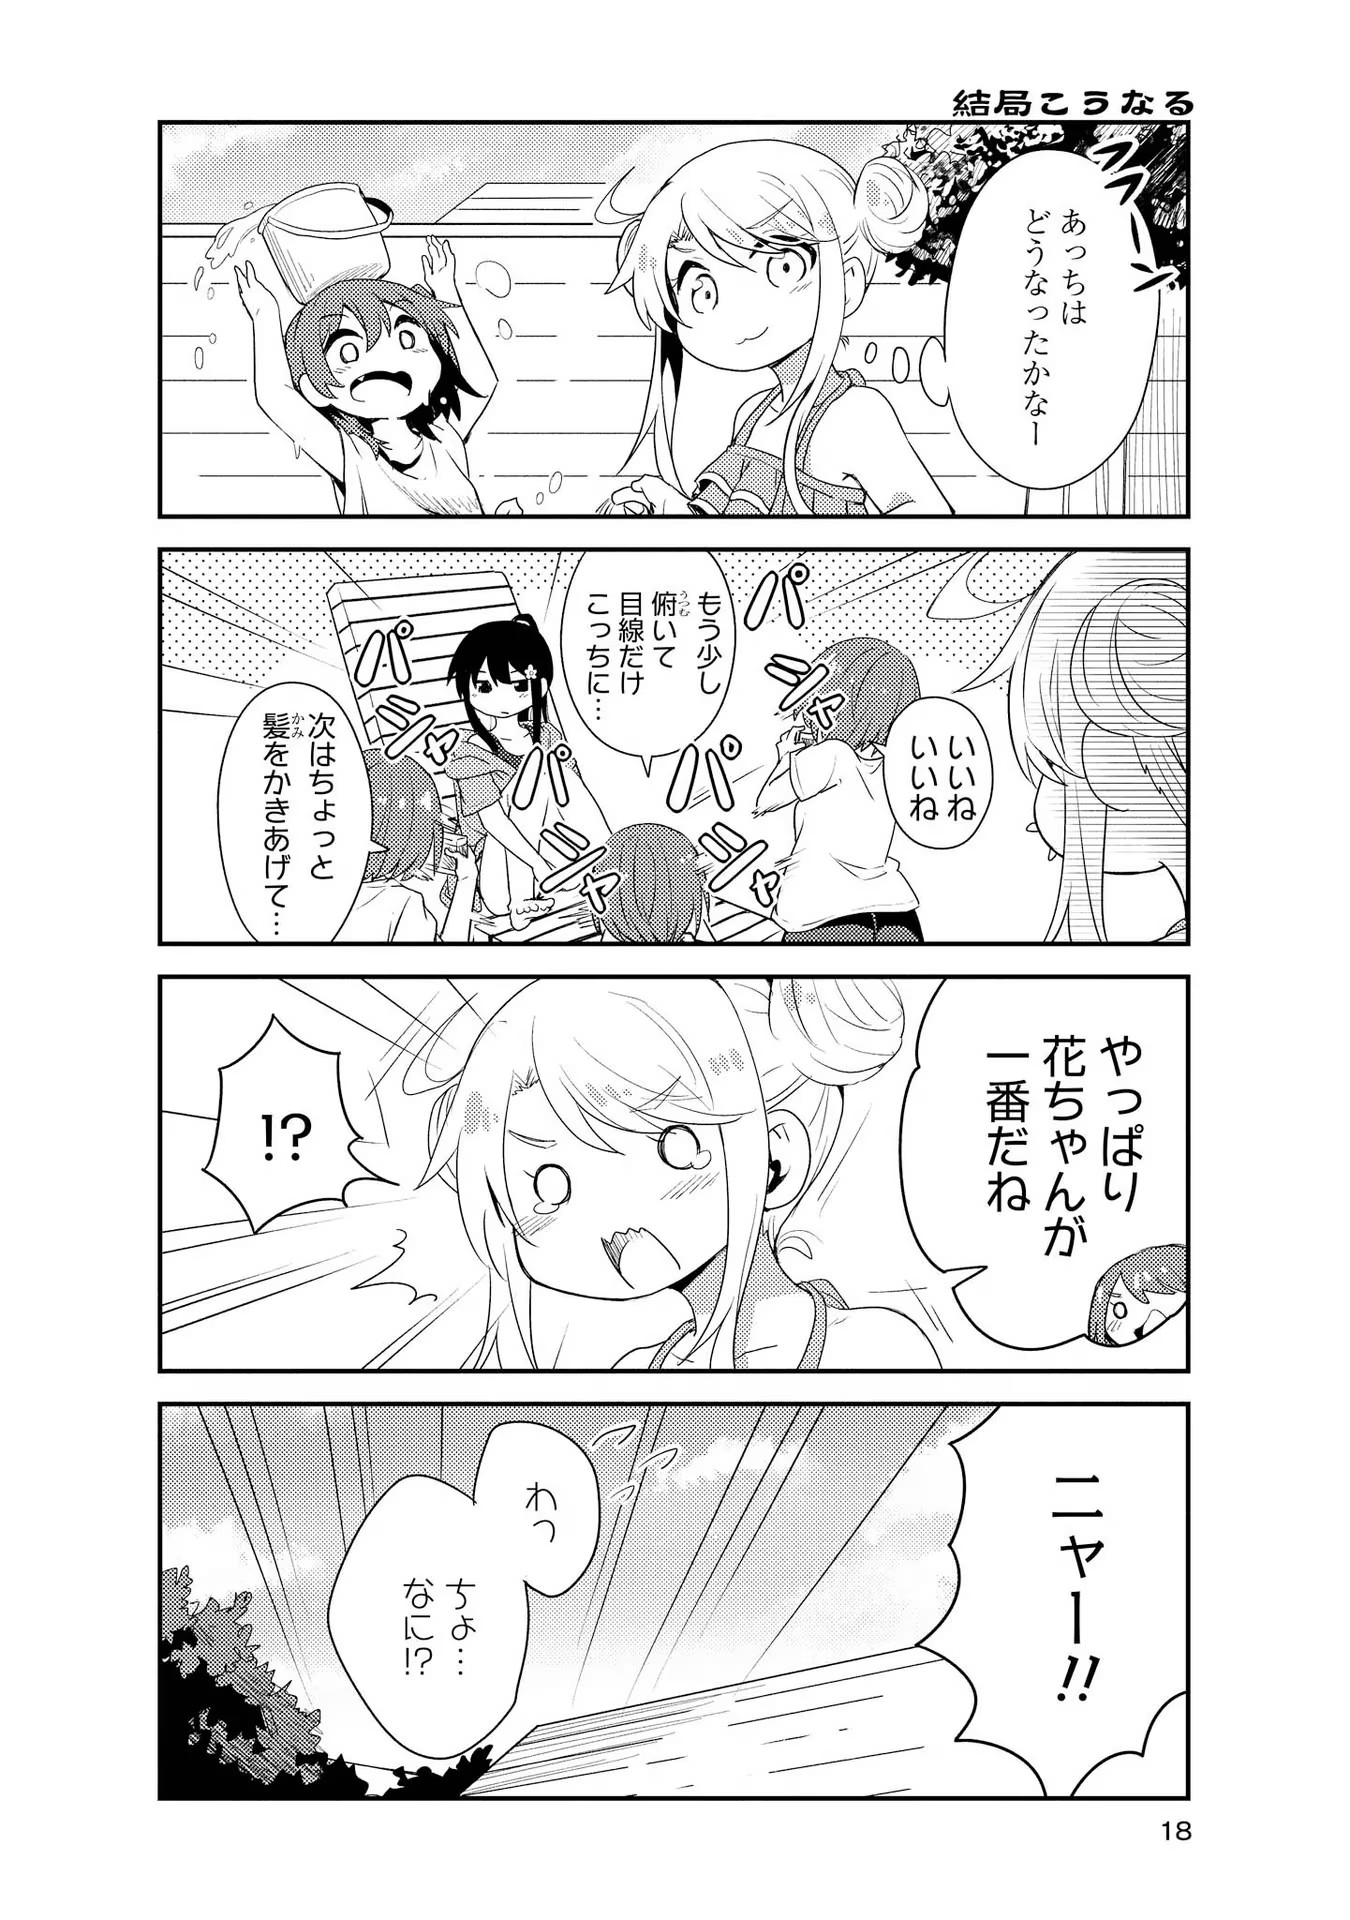 Watashi ni Tenshi ga Maiorita! - Chapter 11 - Page 18